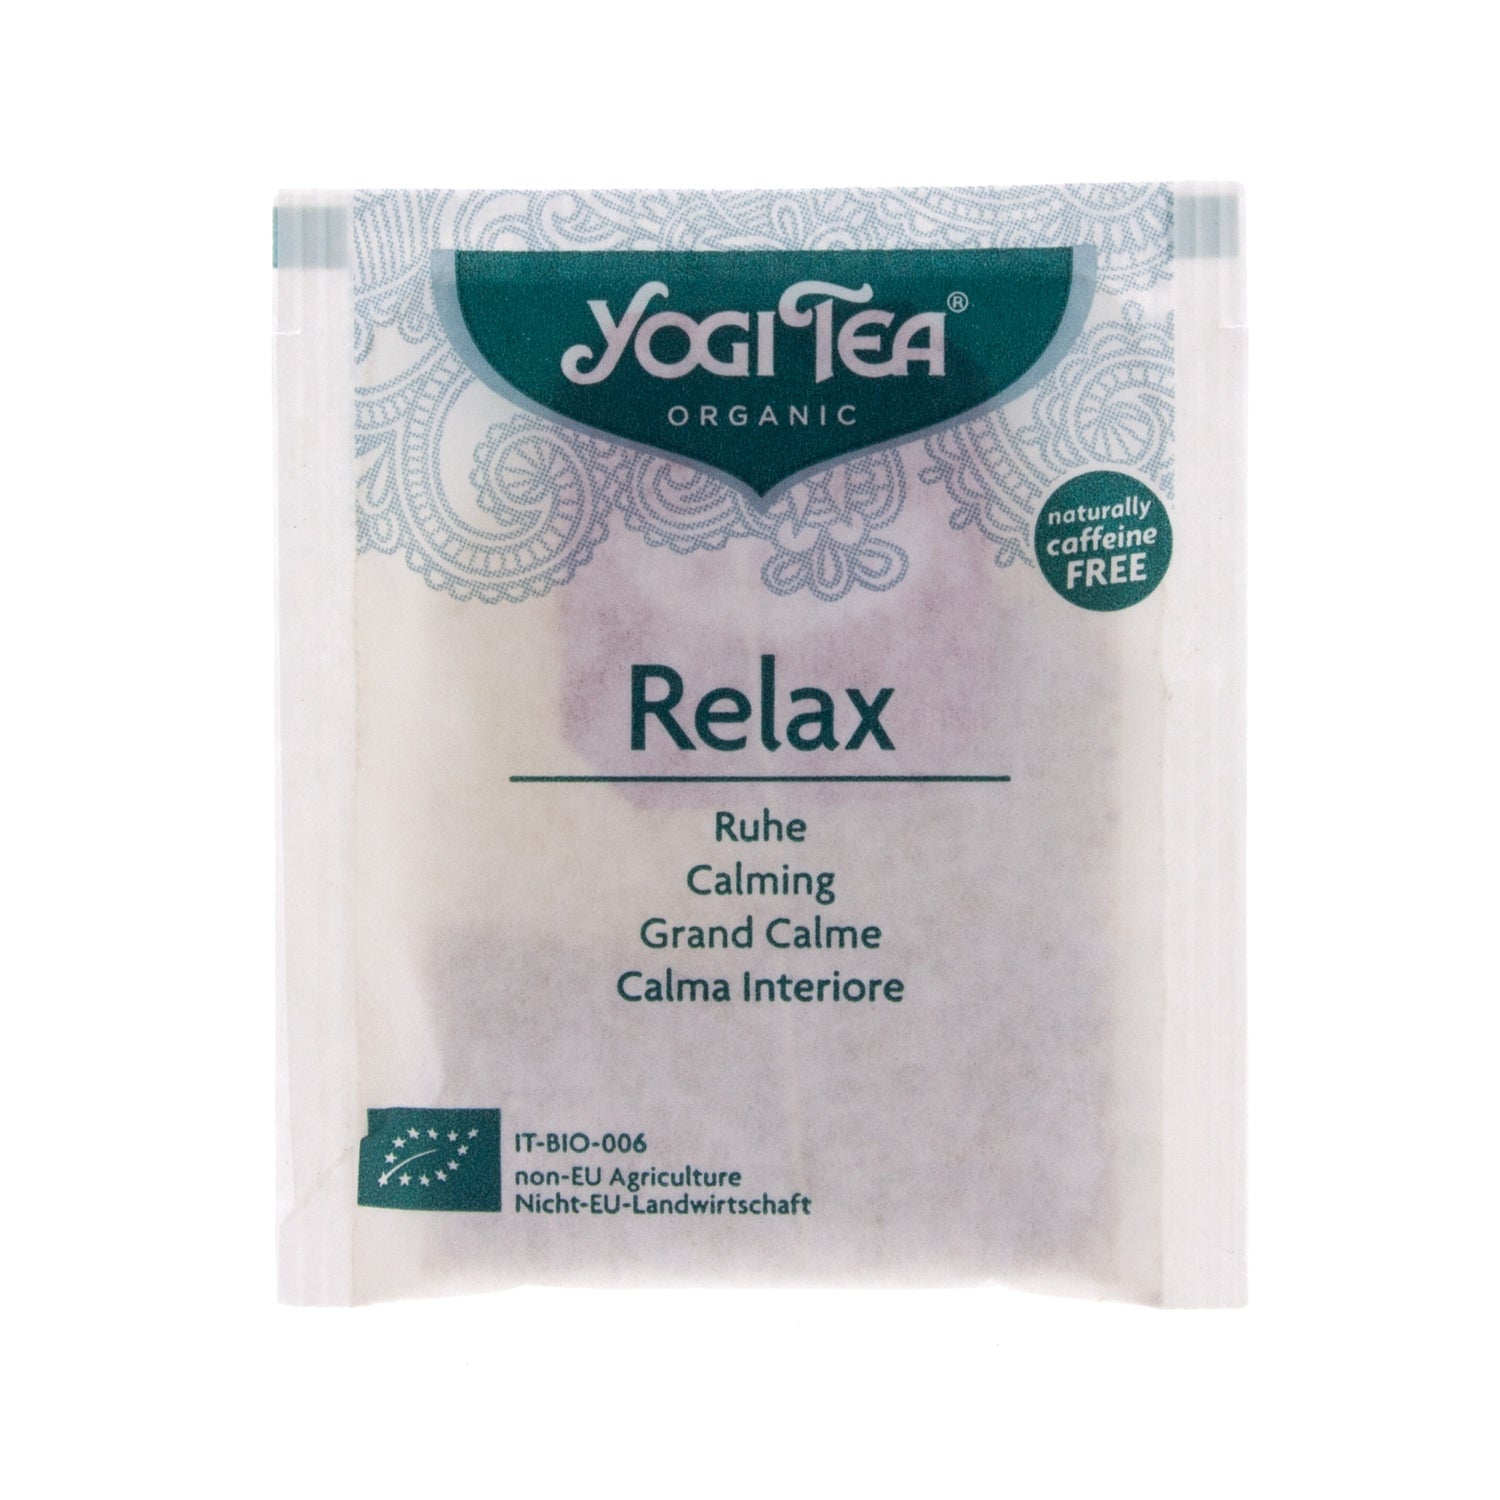 Yogi Tea Relax de Yogi Organic en Infusiones y tisanas de MASmusculo